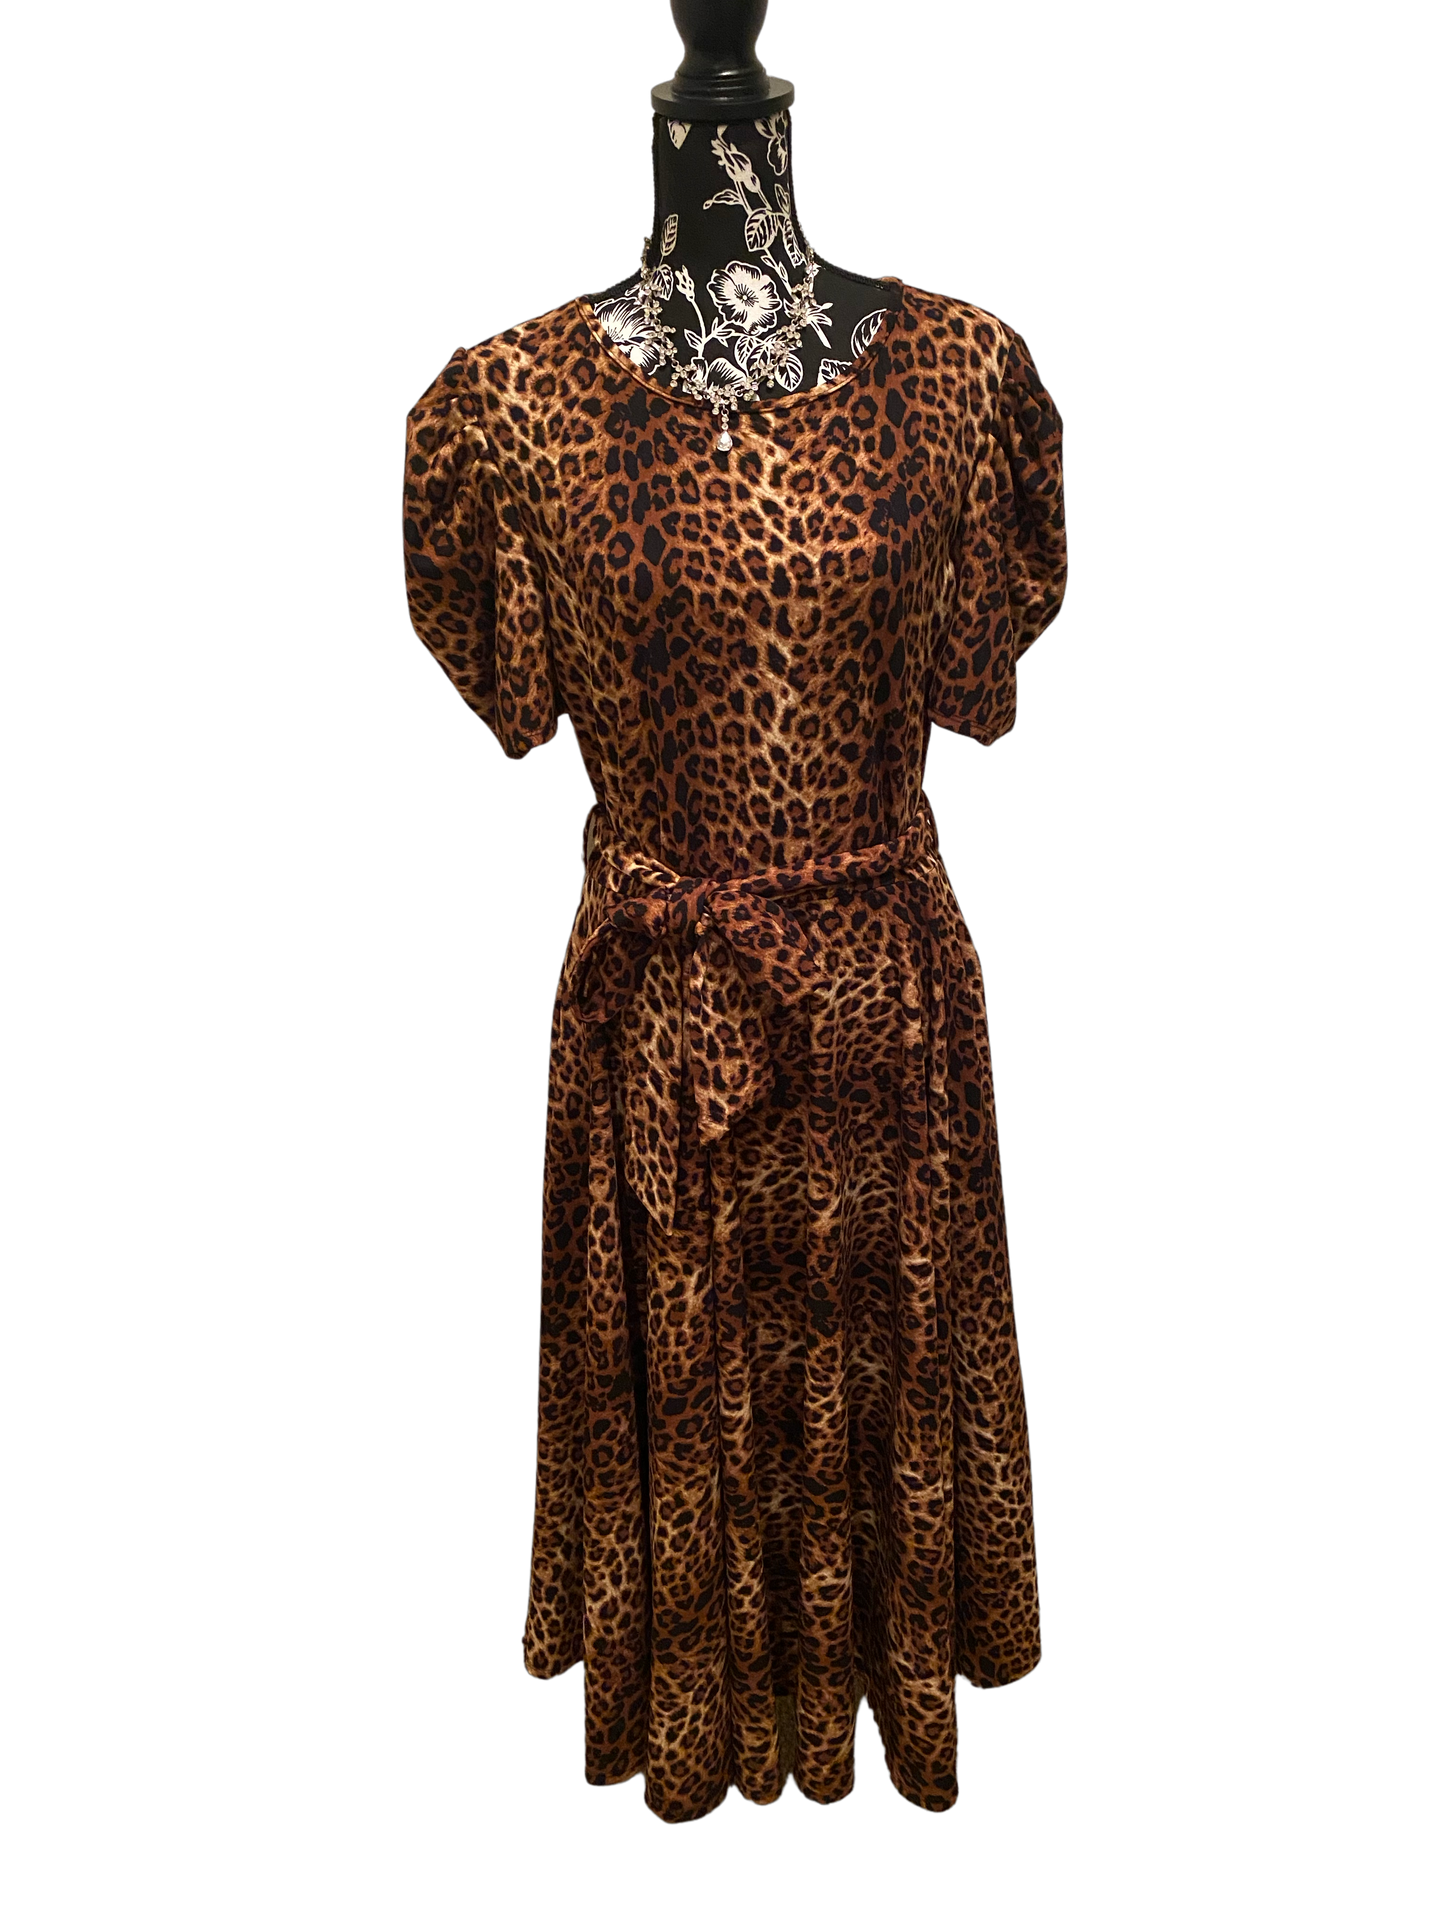 Puff Sleeve Leopard Print Dress, Sizes 1X - 3X (Dark Leopard Print)